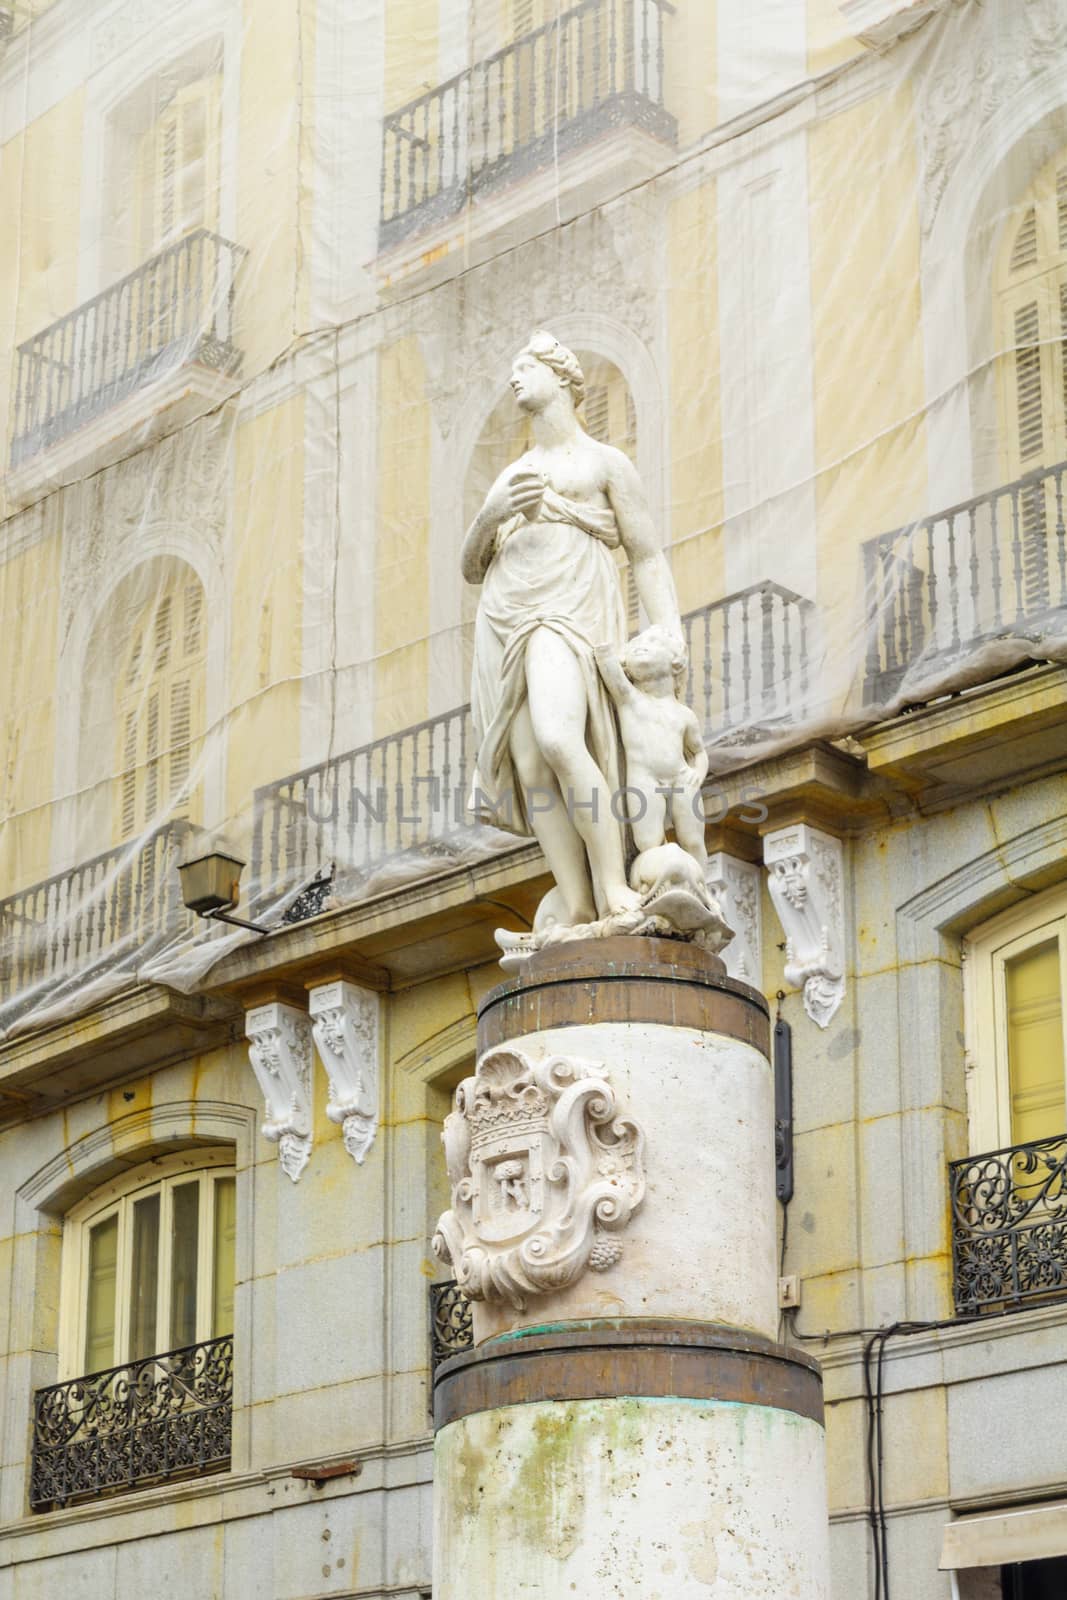 The Mariblanca statue, dated 17th century, in Puerta del Sol square, Madrid, Spain